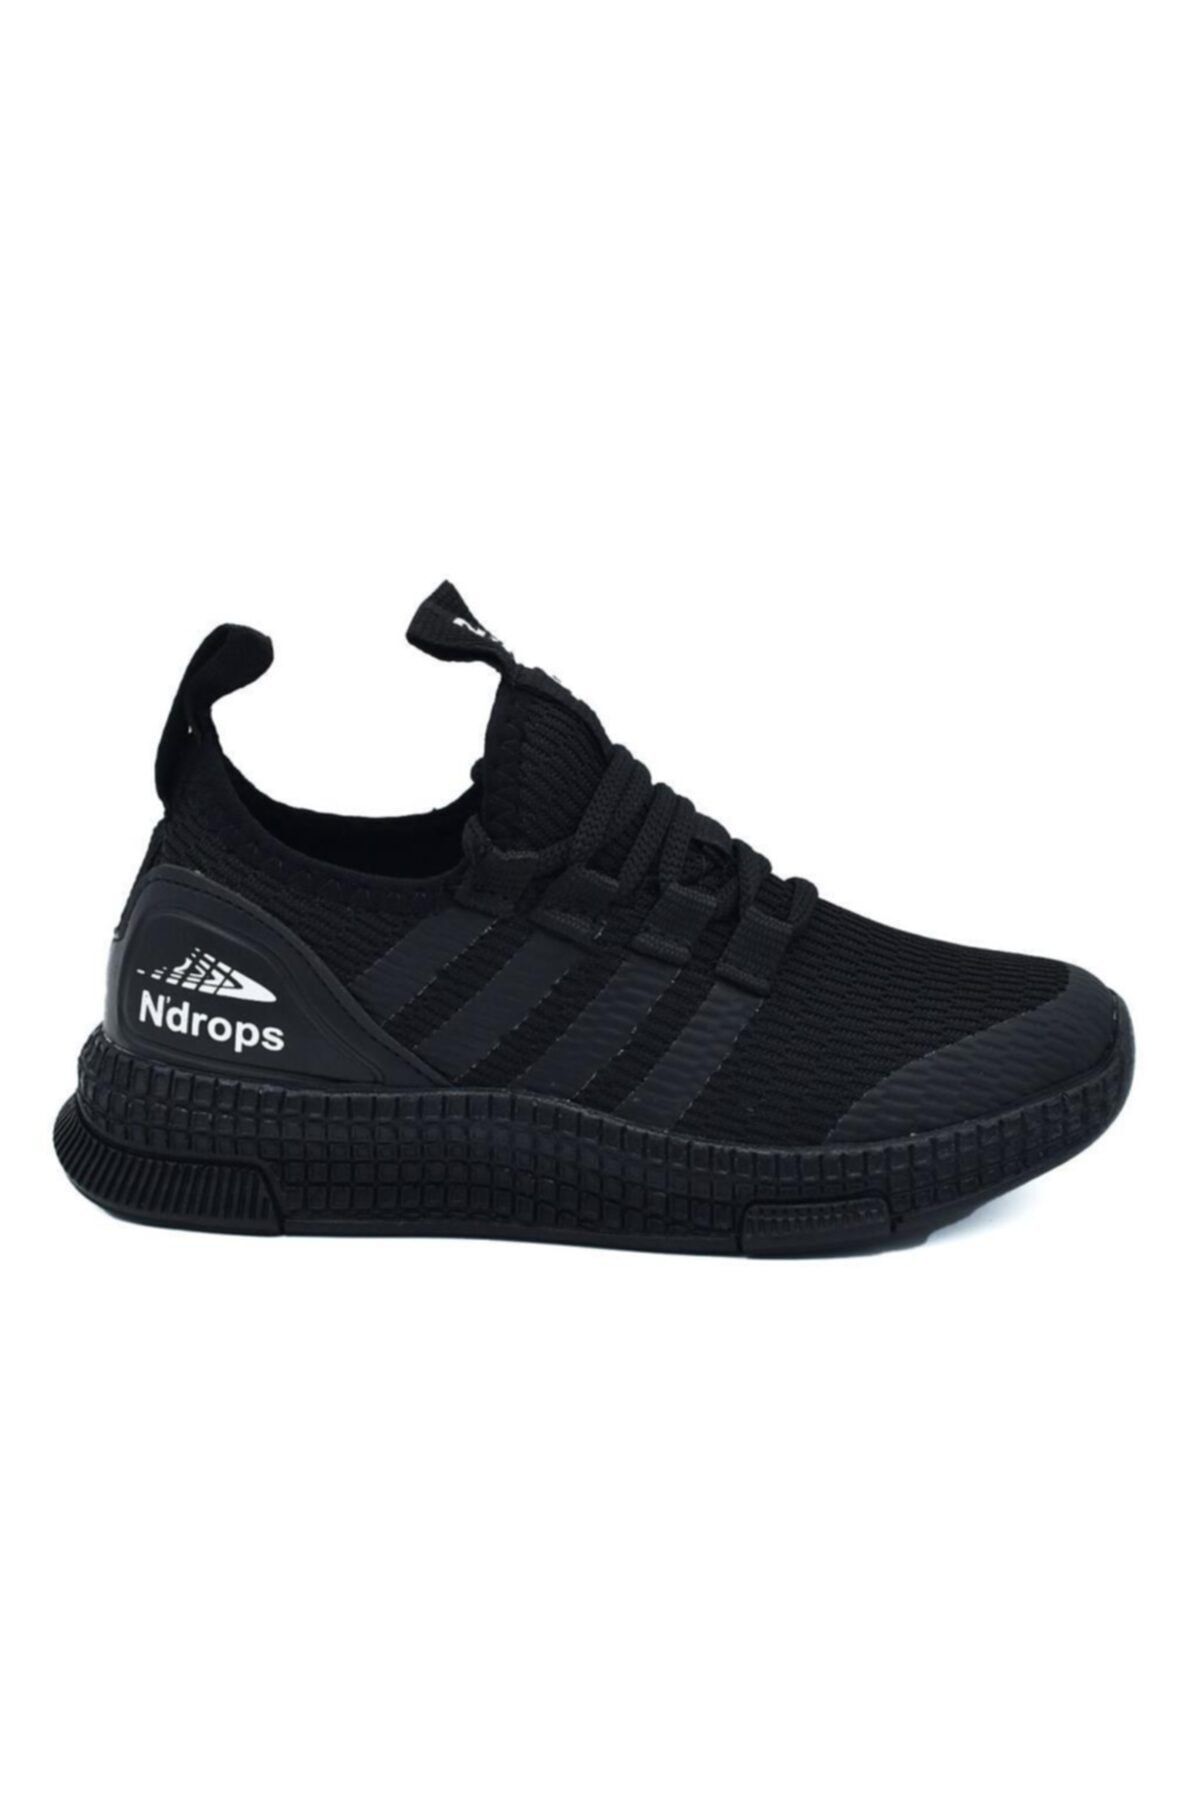 N Drops Unisex Çocuk Siyah Lisanslı Markalar Spor Ayakkabı